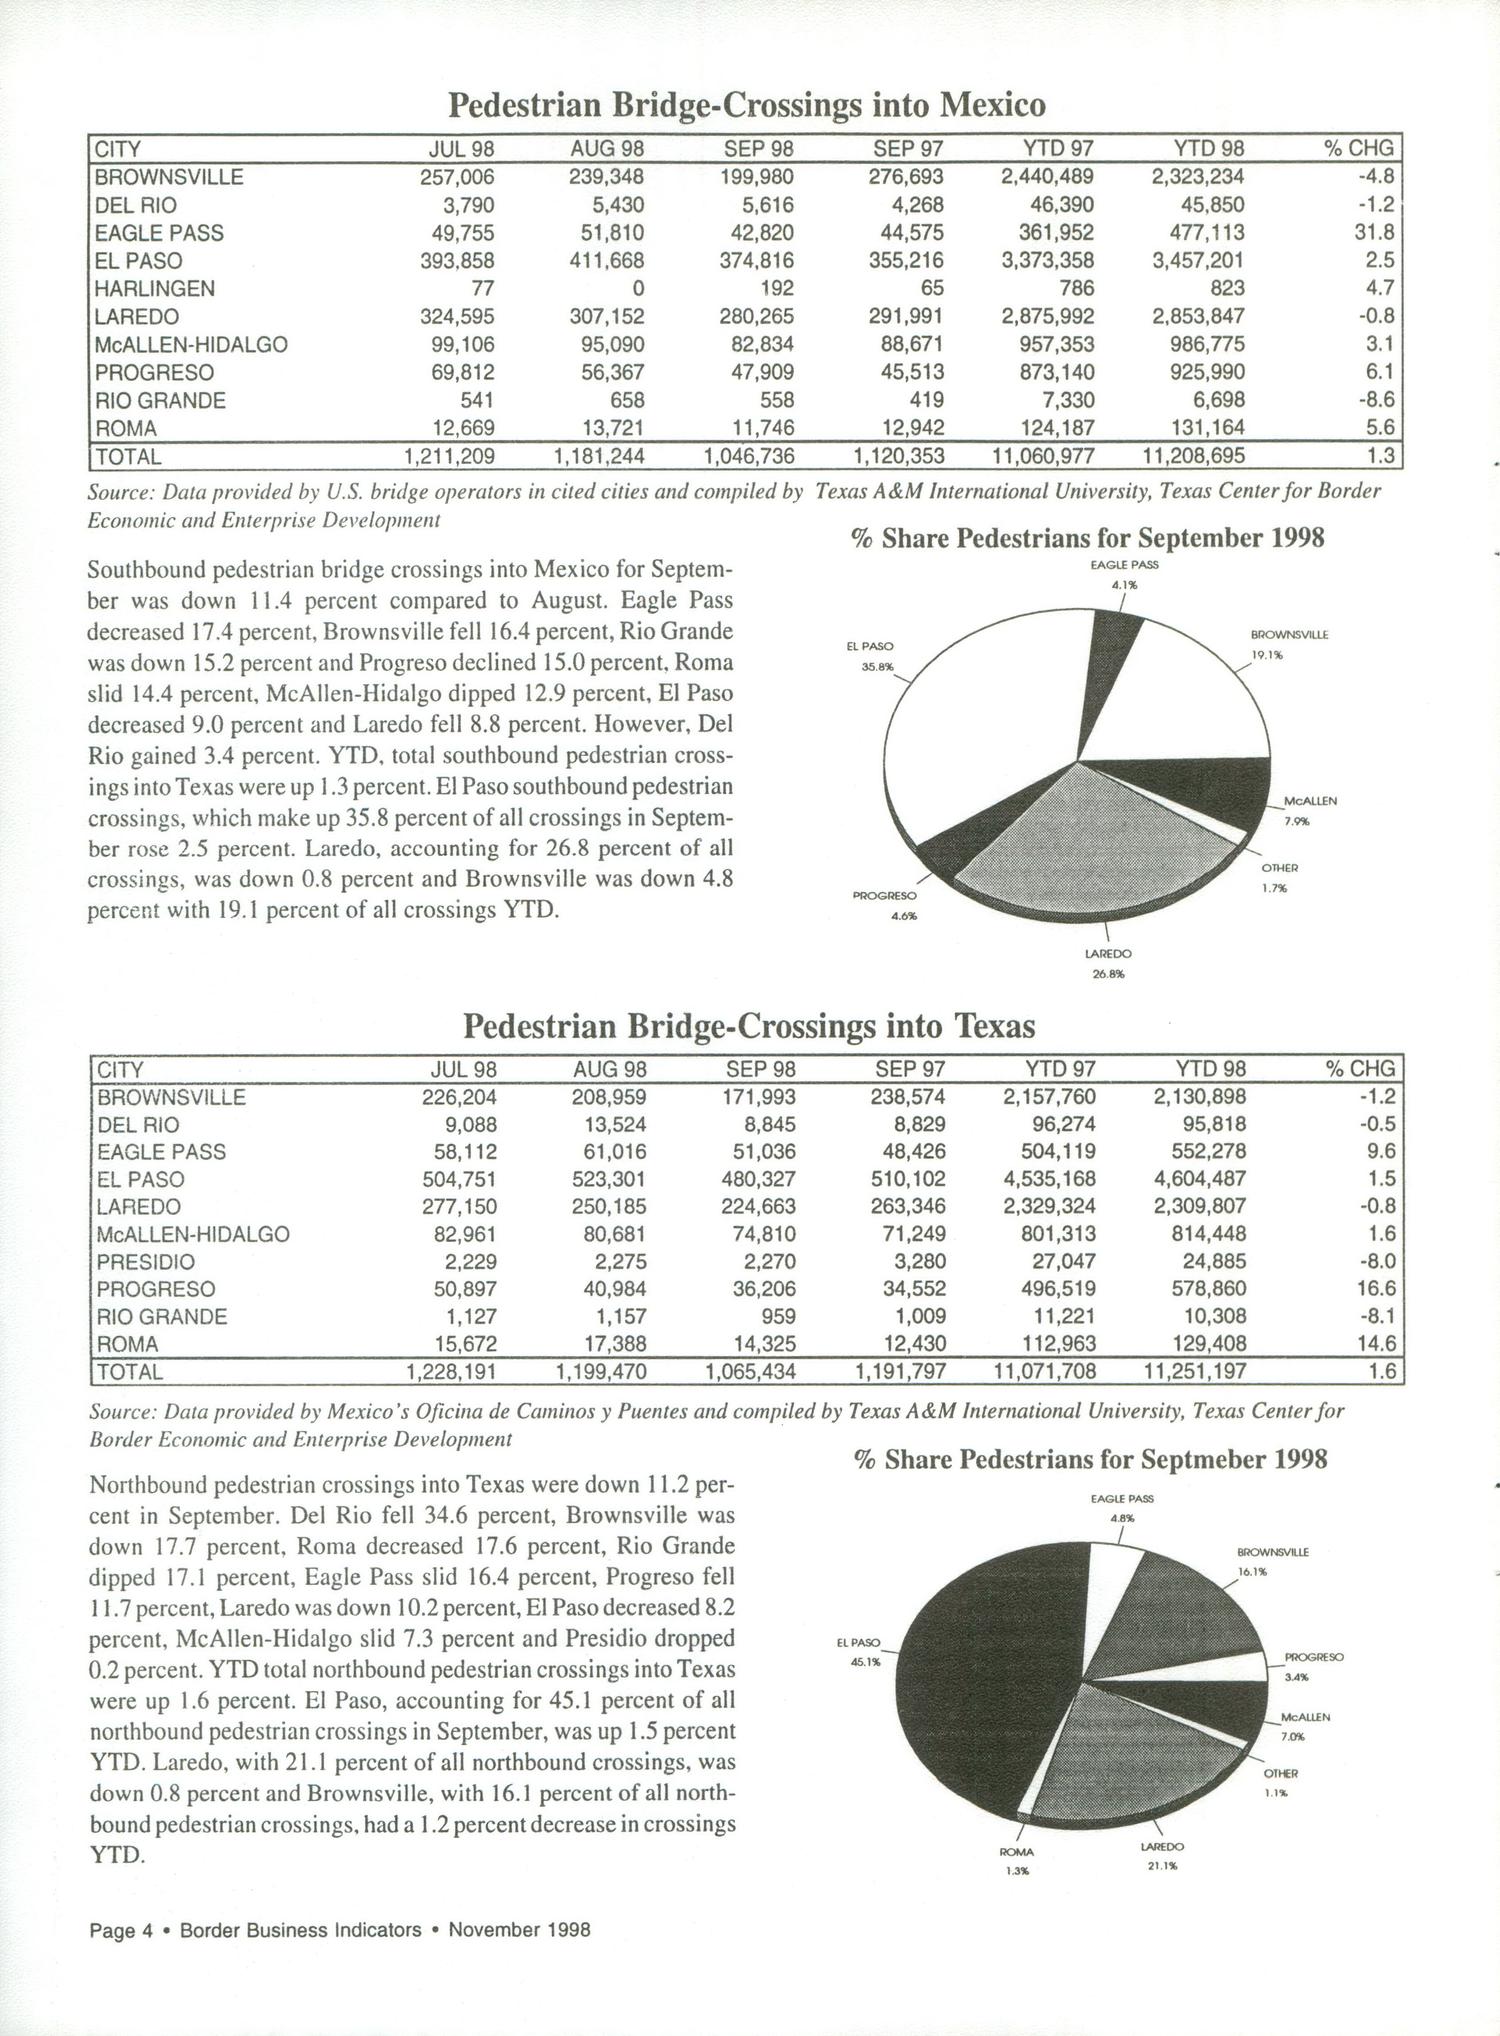 Border Business Indicators, Volume 22, Number 11, November 1998
                                                
                                                    4
                                                